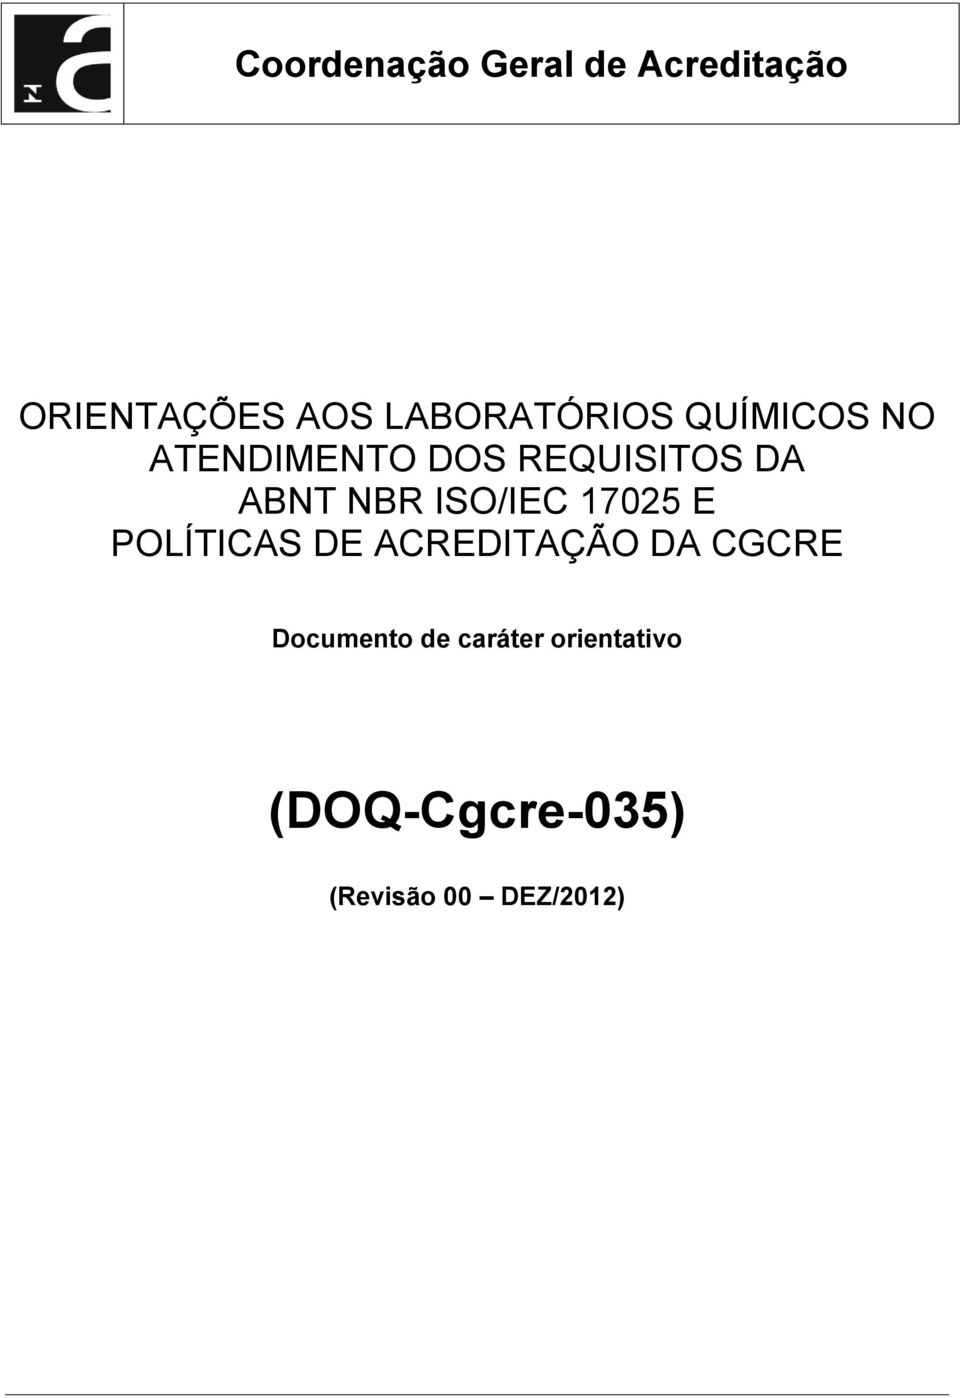 ABNT NBR ISO/IEC 17025 E POLÍTICAS DE ACREDITAÇÃO DA CGCRE